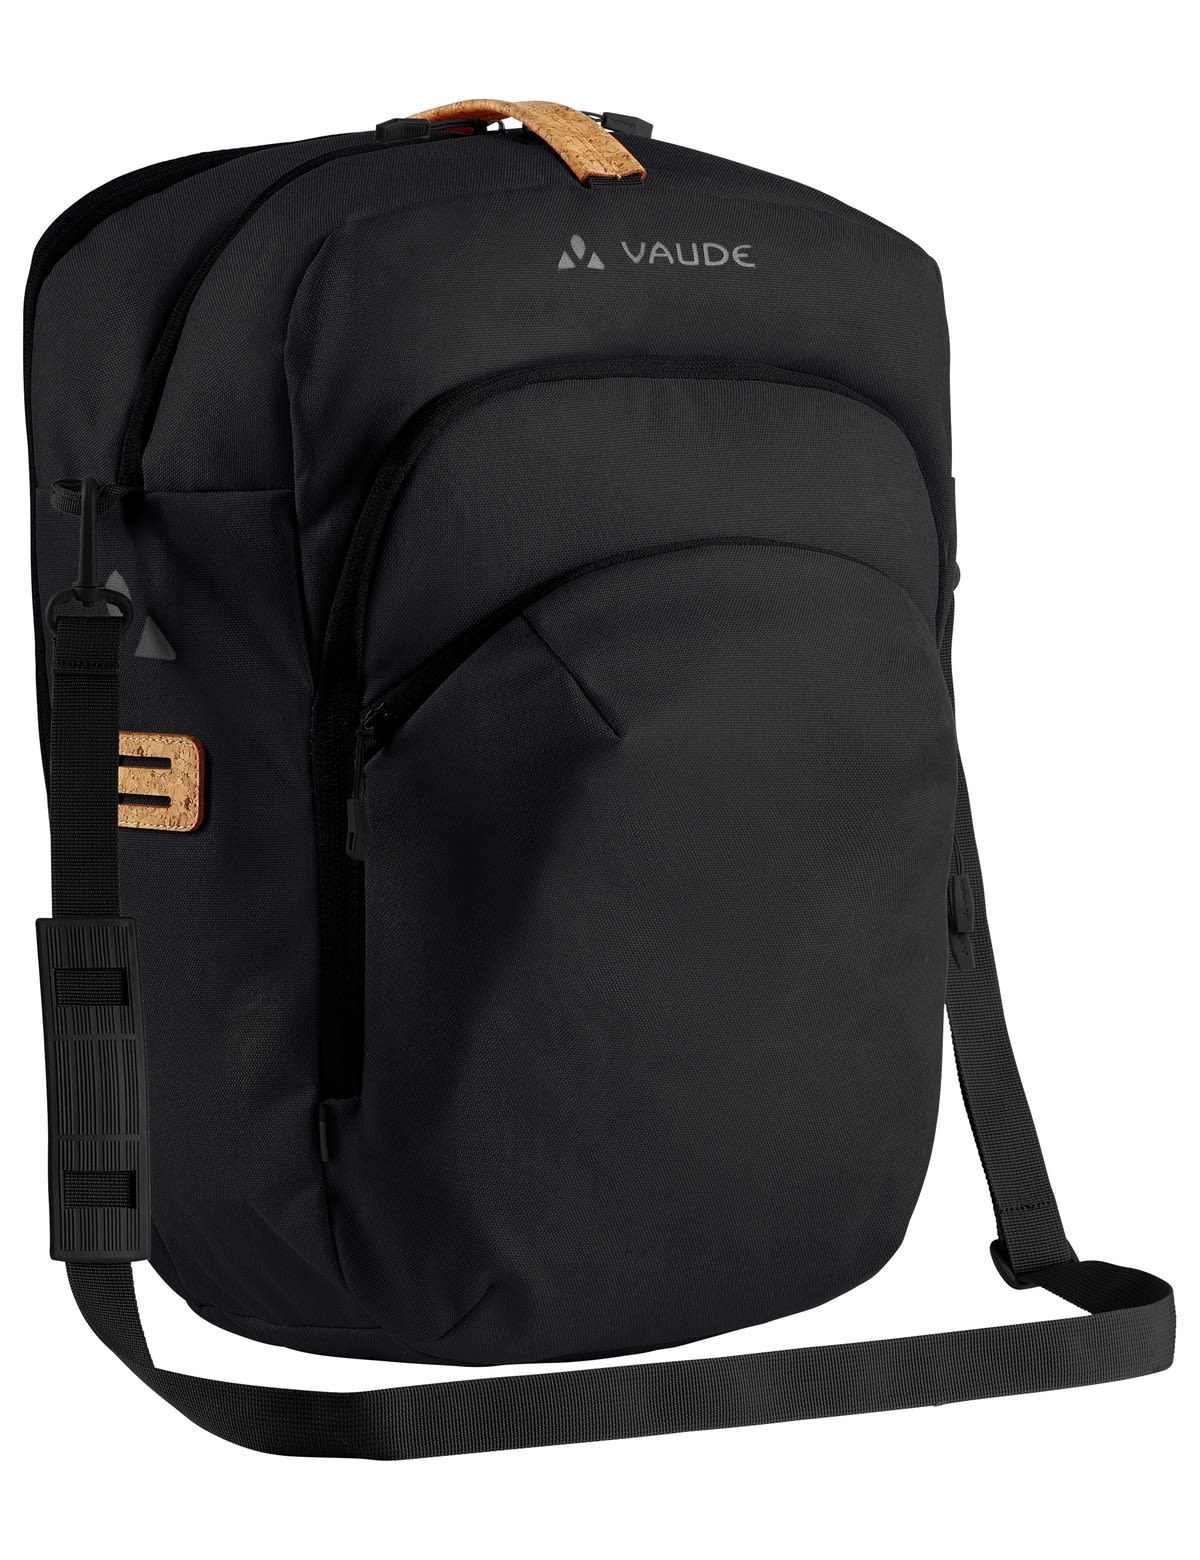 Vaude Eback Single Schwarz- Taschen- Grsse 28l - Farbe Black unter Vaude